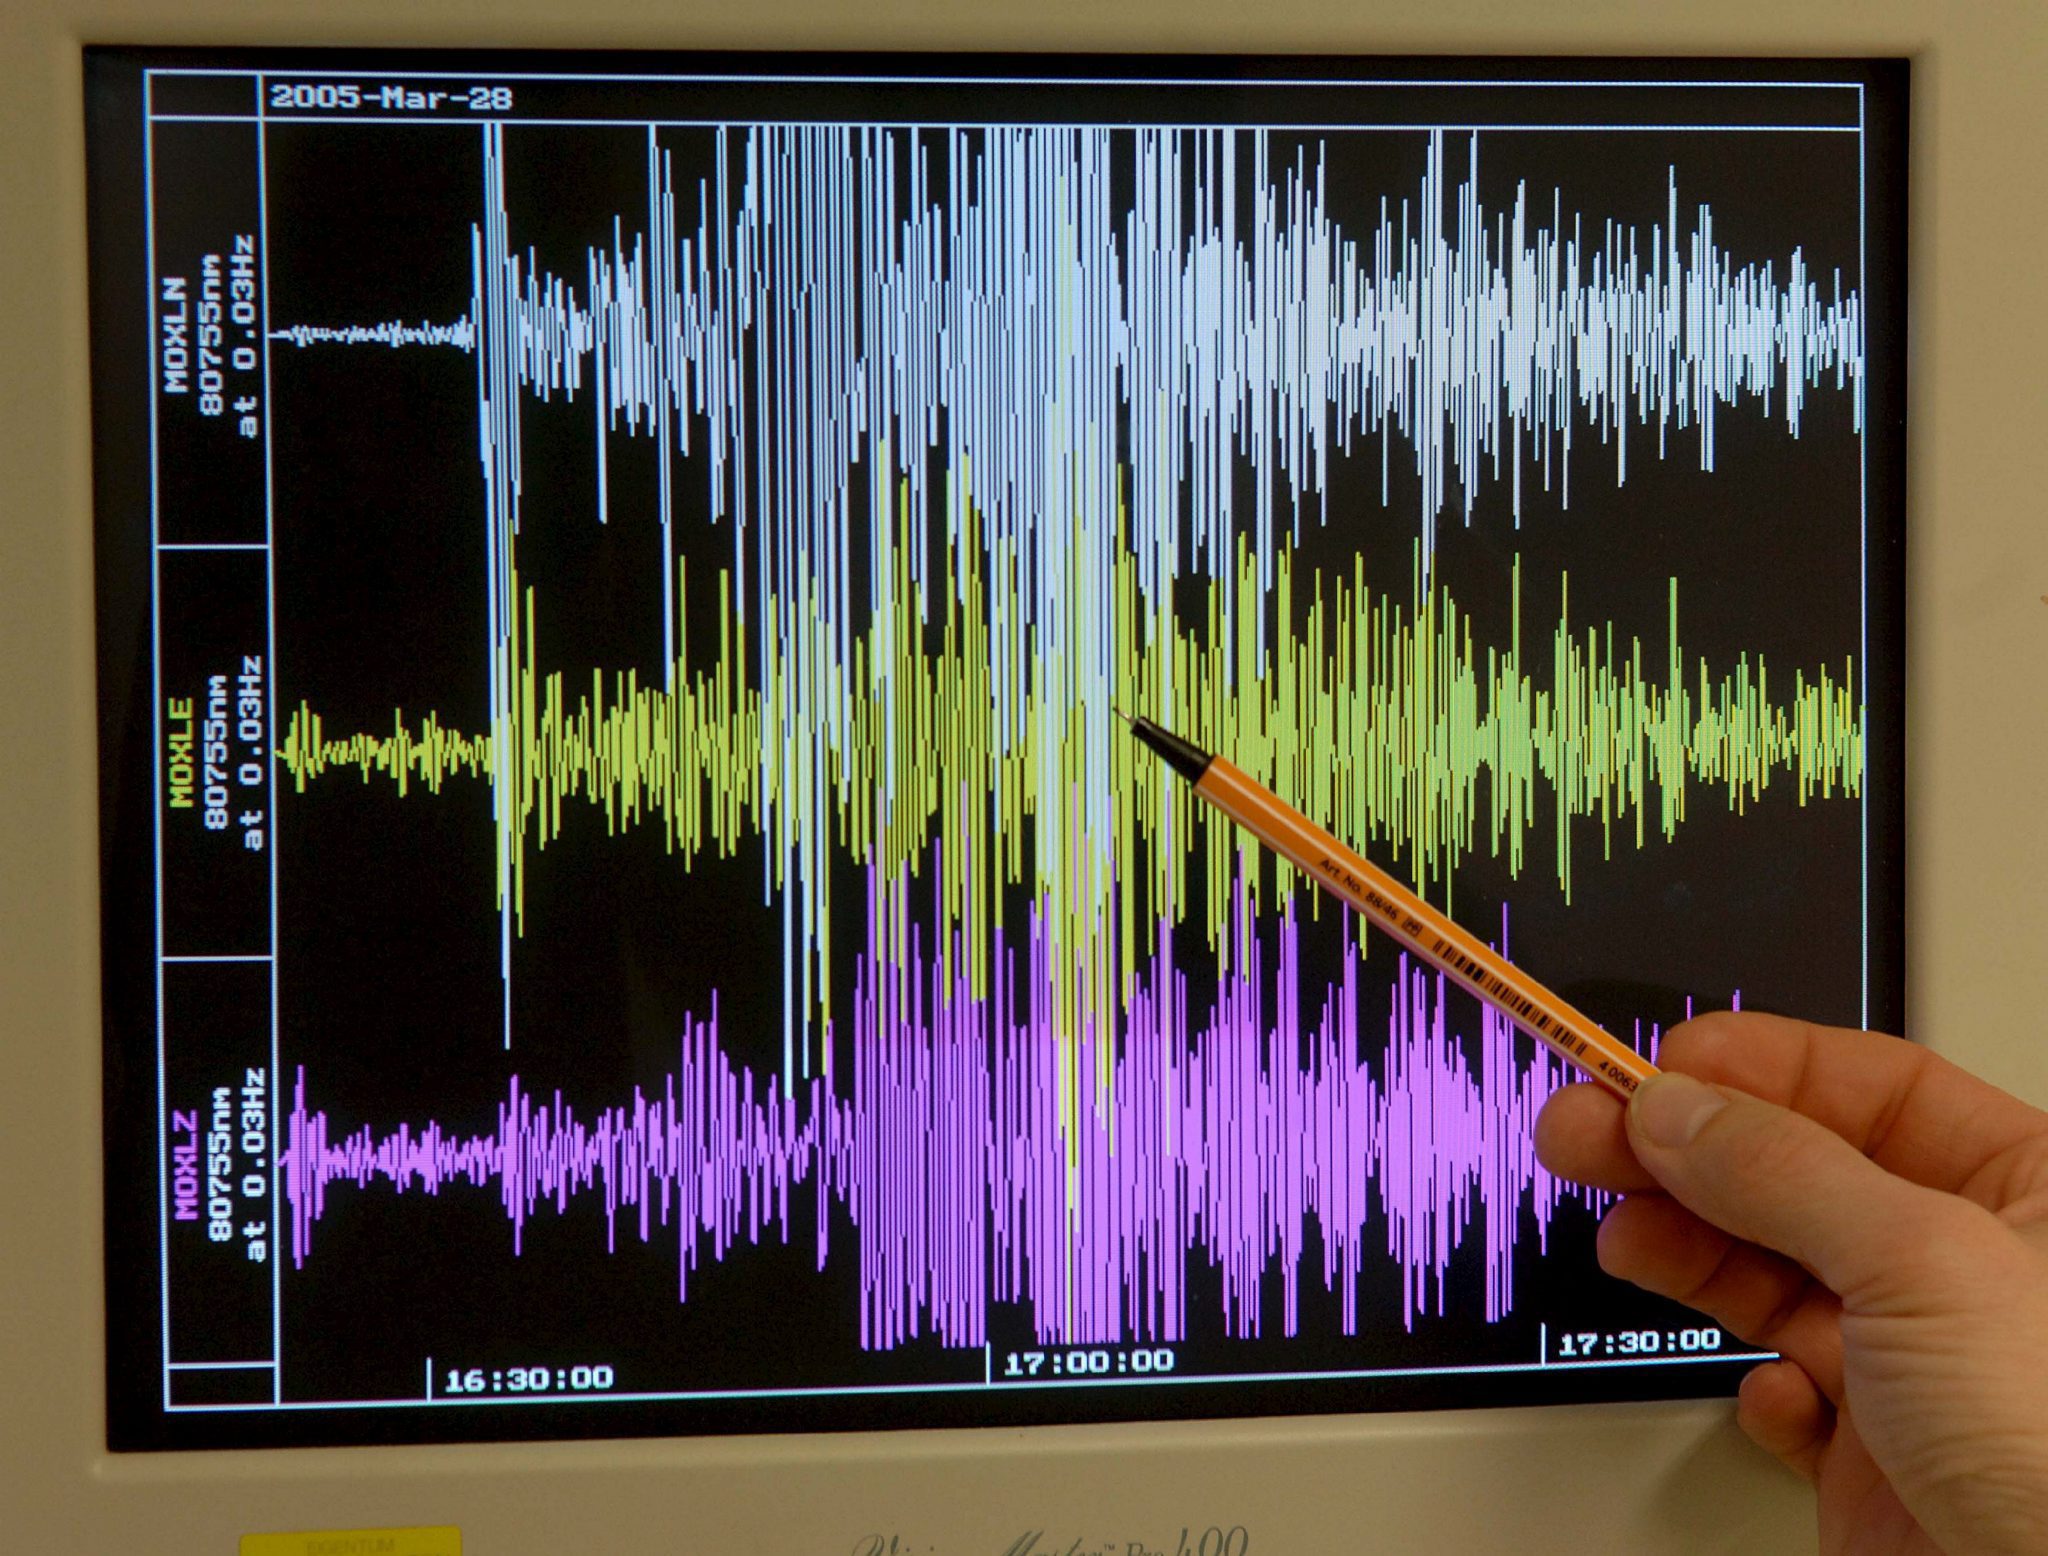 Σεισμός 4,8 βαθμών της κλίμακας ρίχτερ ανατολικά της Ανδρου